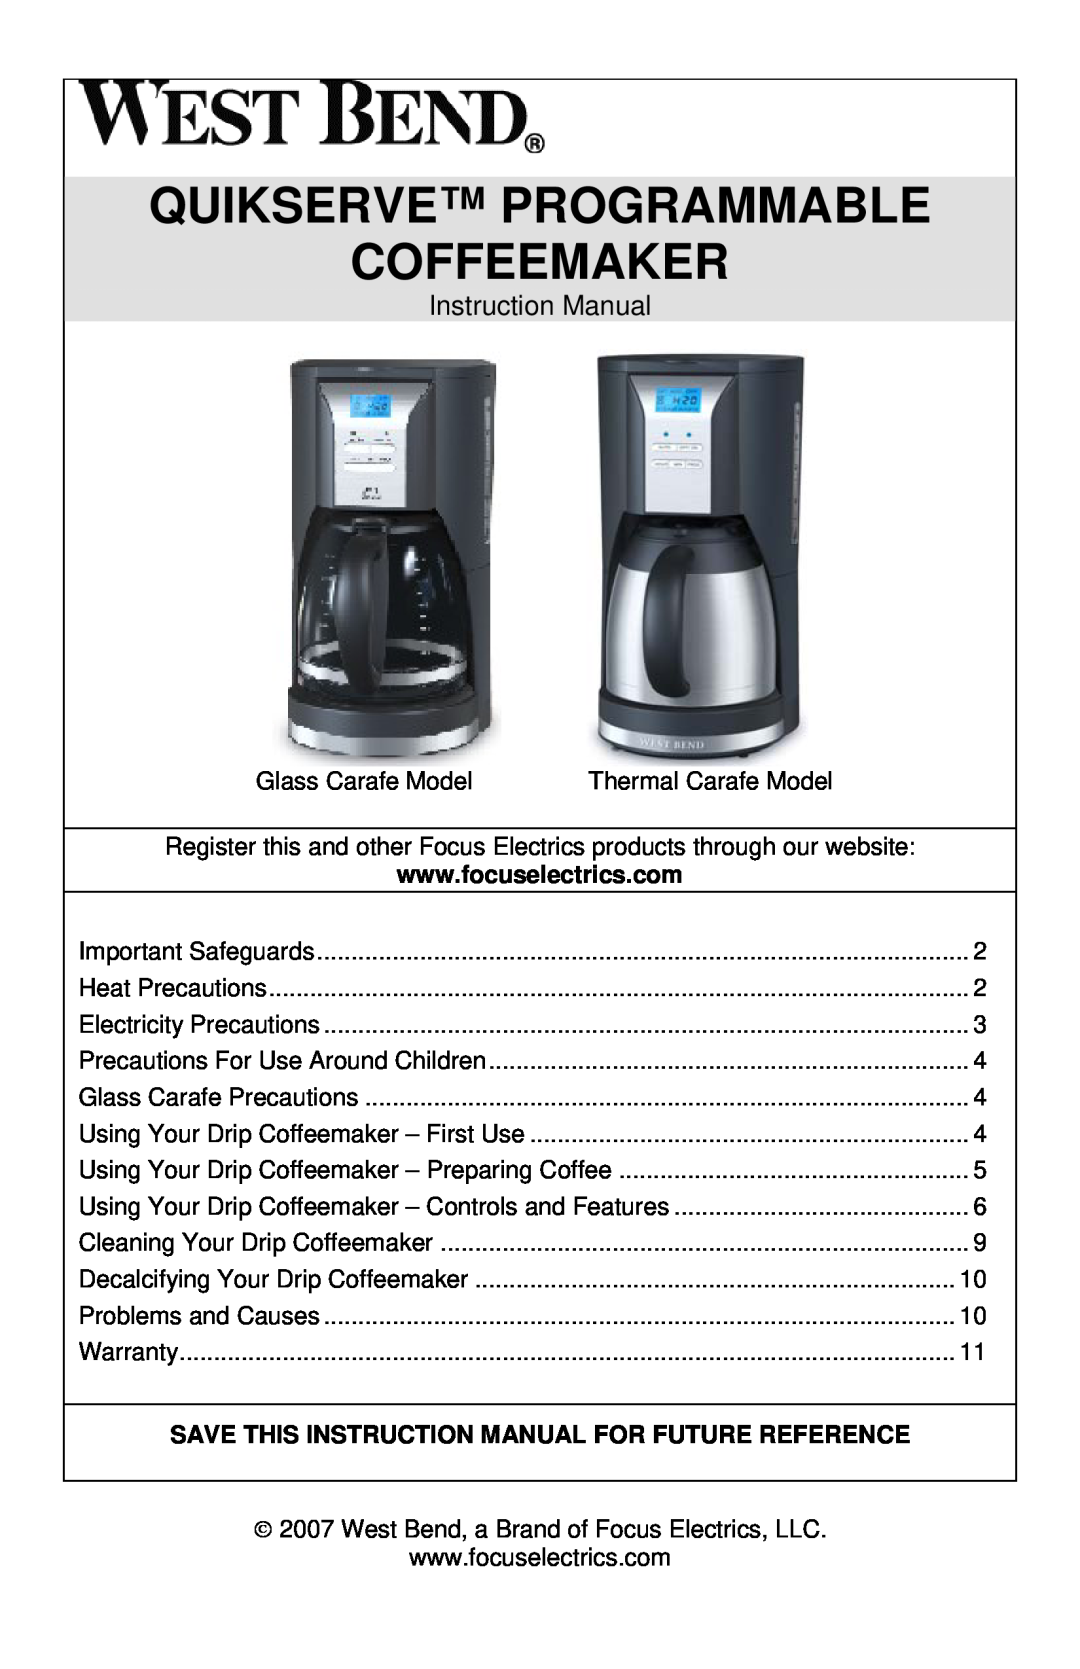 West Bend QUIKSERVE instruction manual Quikserve Programmable Coffeemaker 